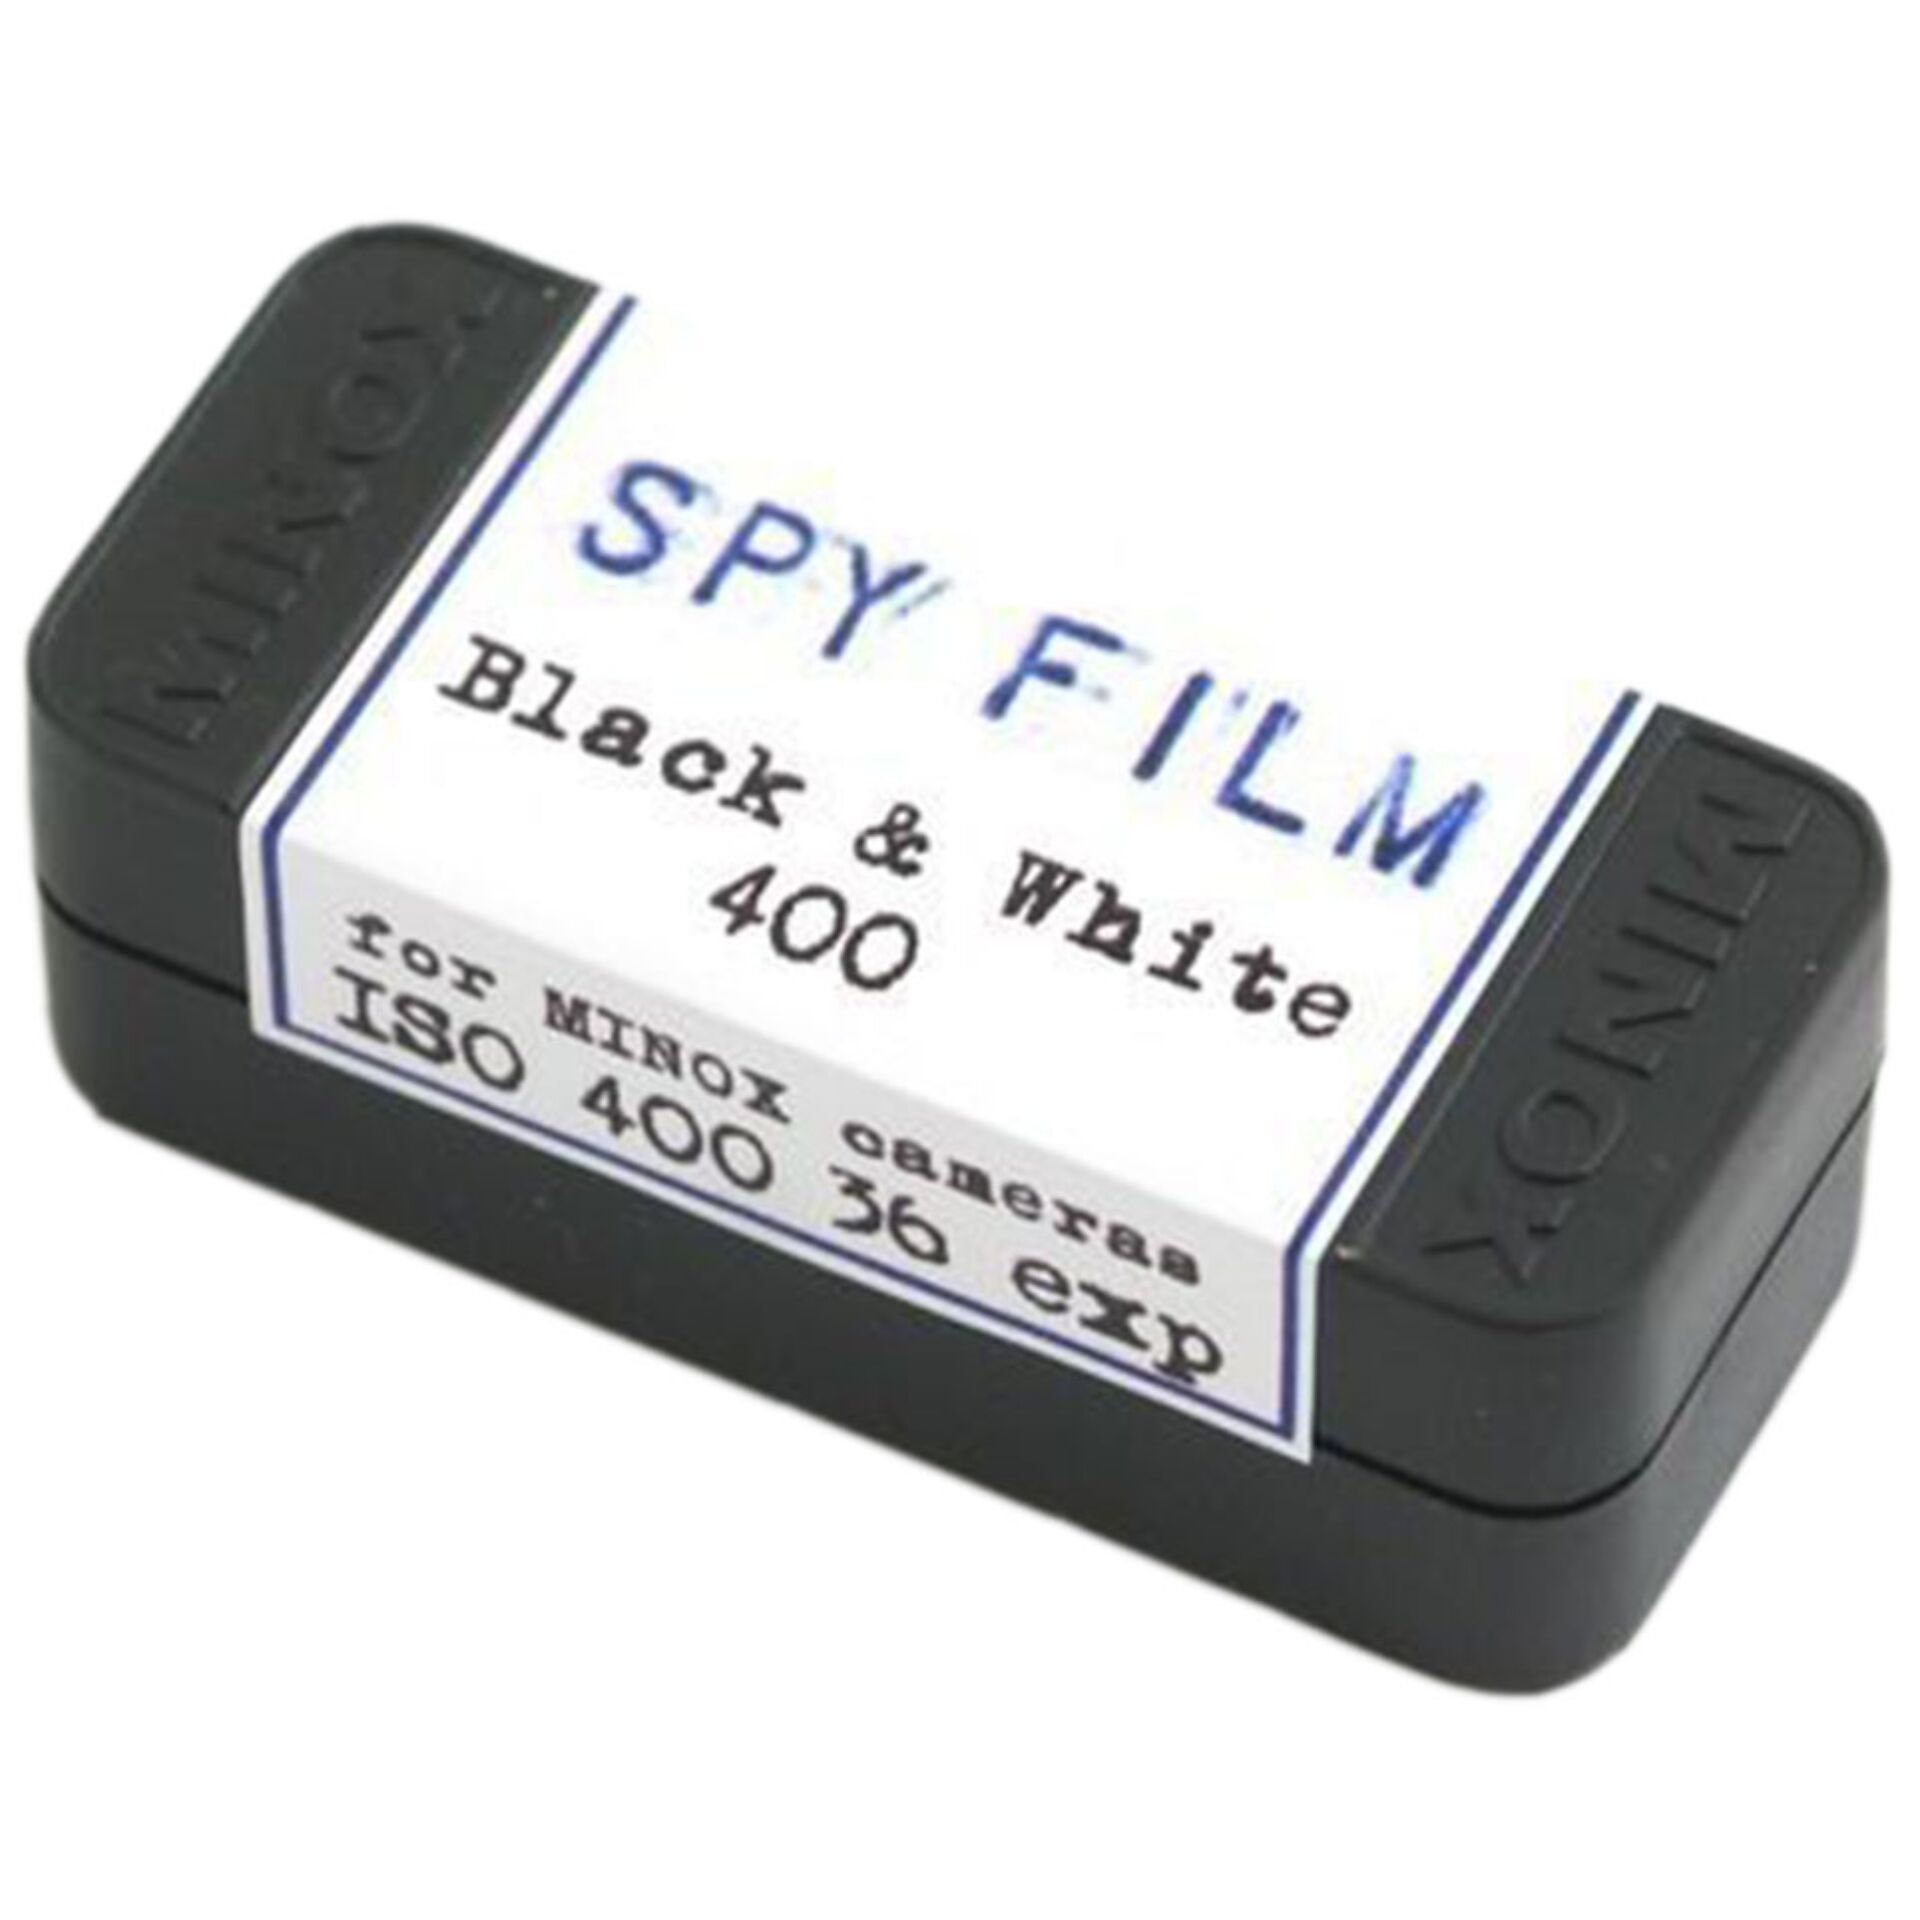 Minox SPY Film     400 8x11/36 B&W